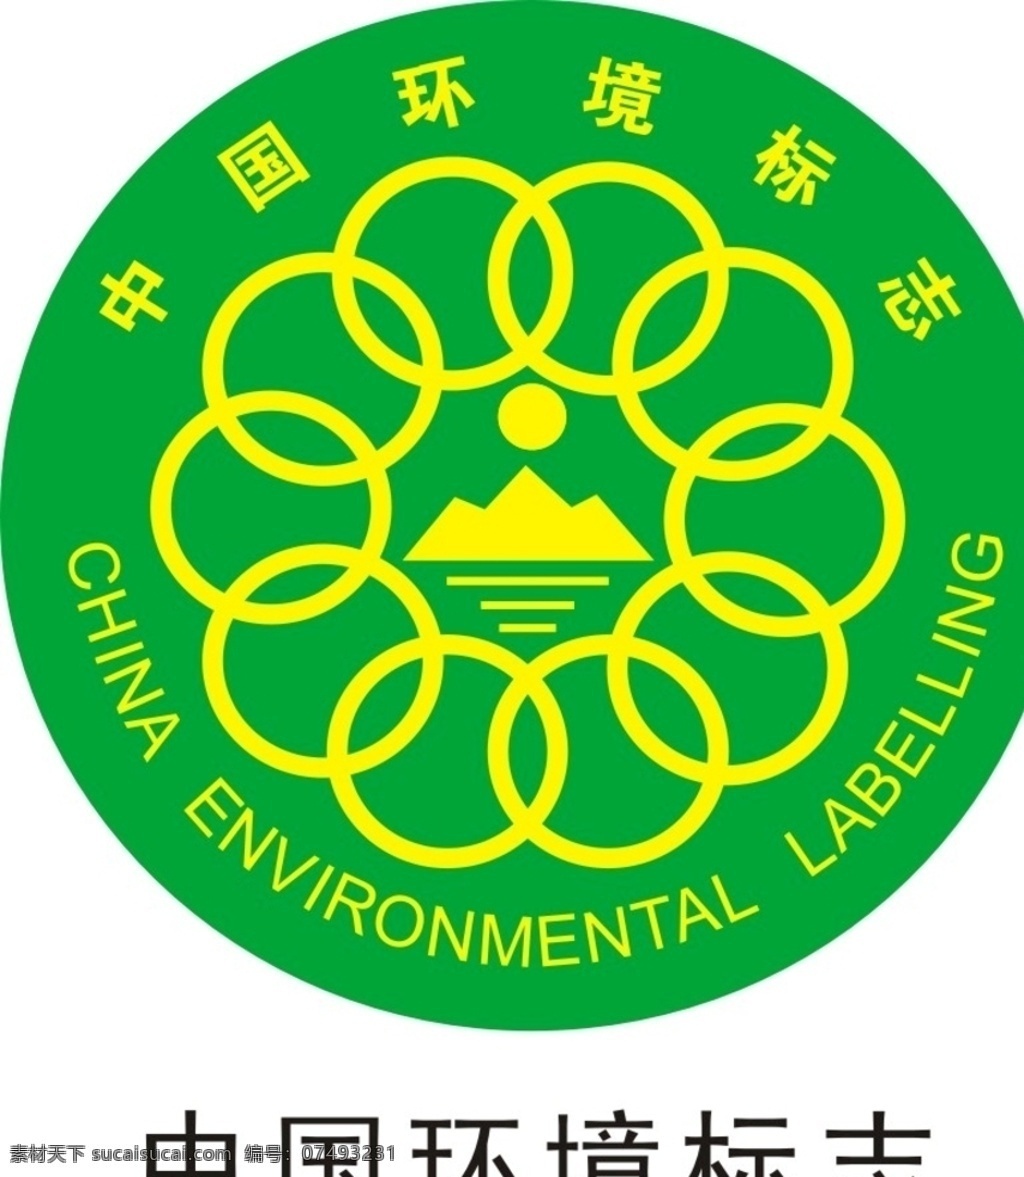 环境标志 环保标志 标志标识 环保产业认证 认证图标 环保协会 环保 环境保护